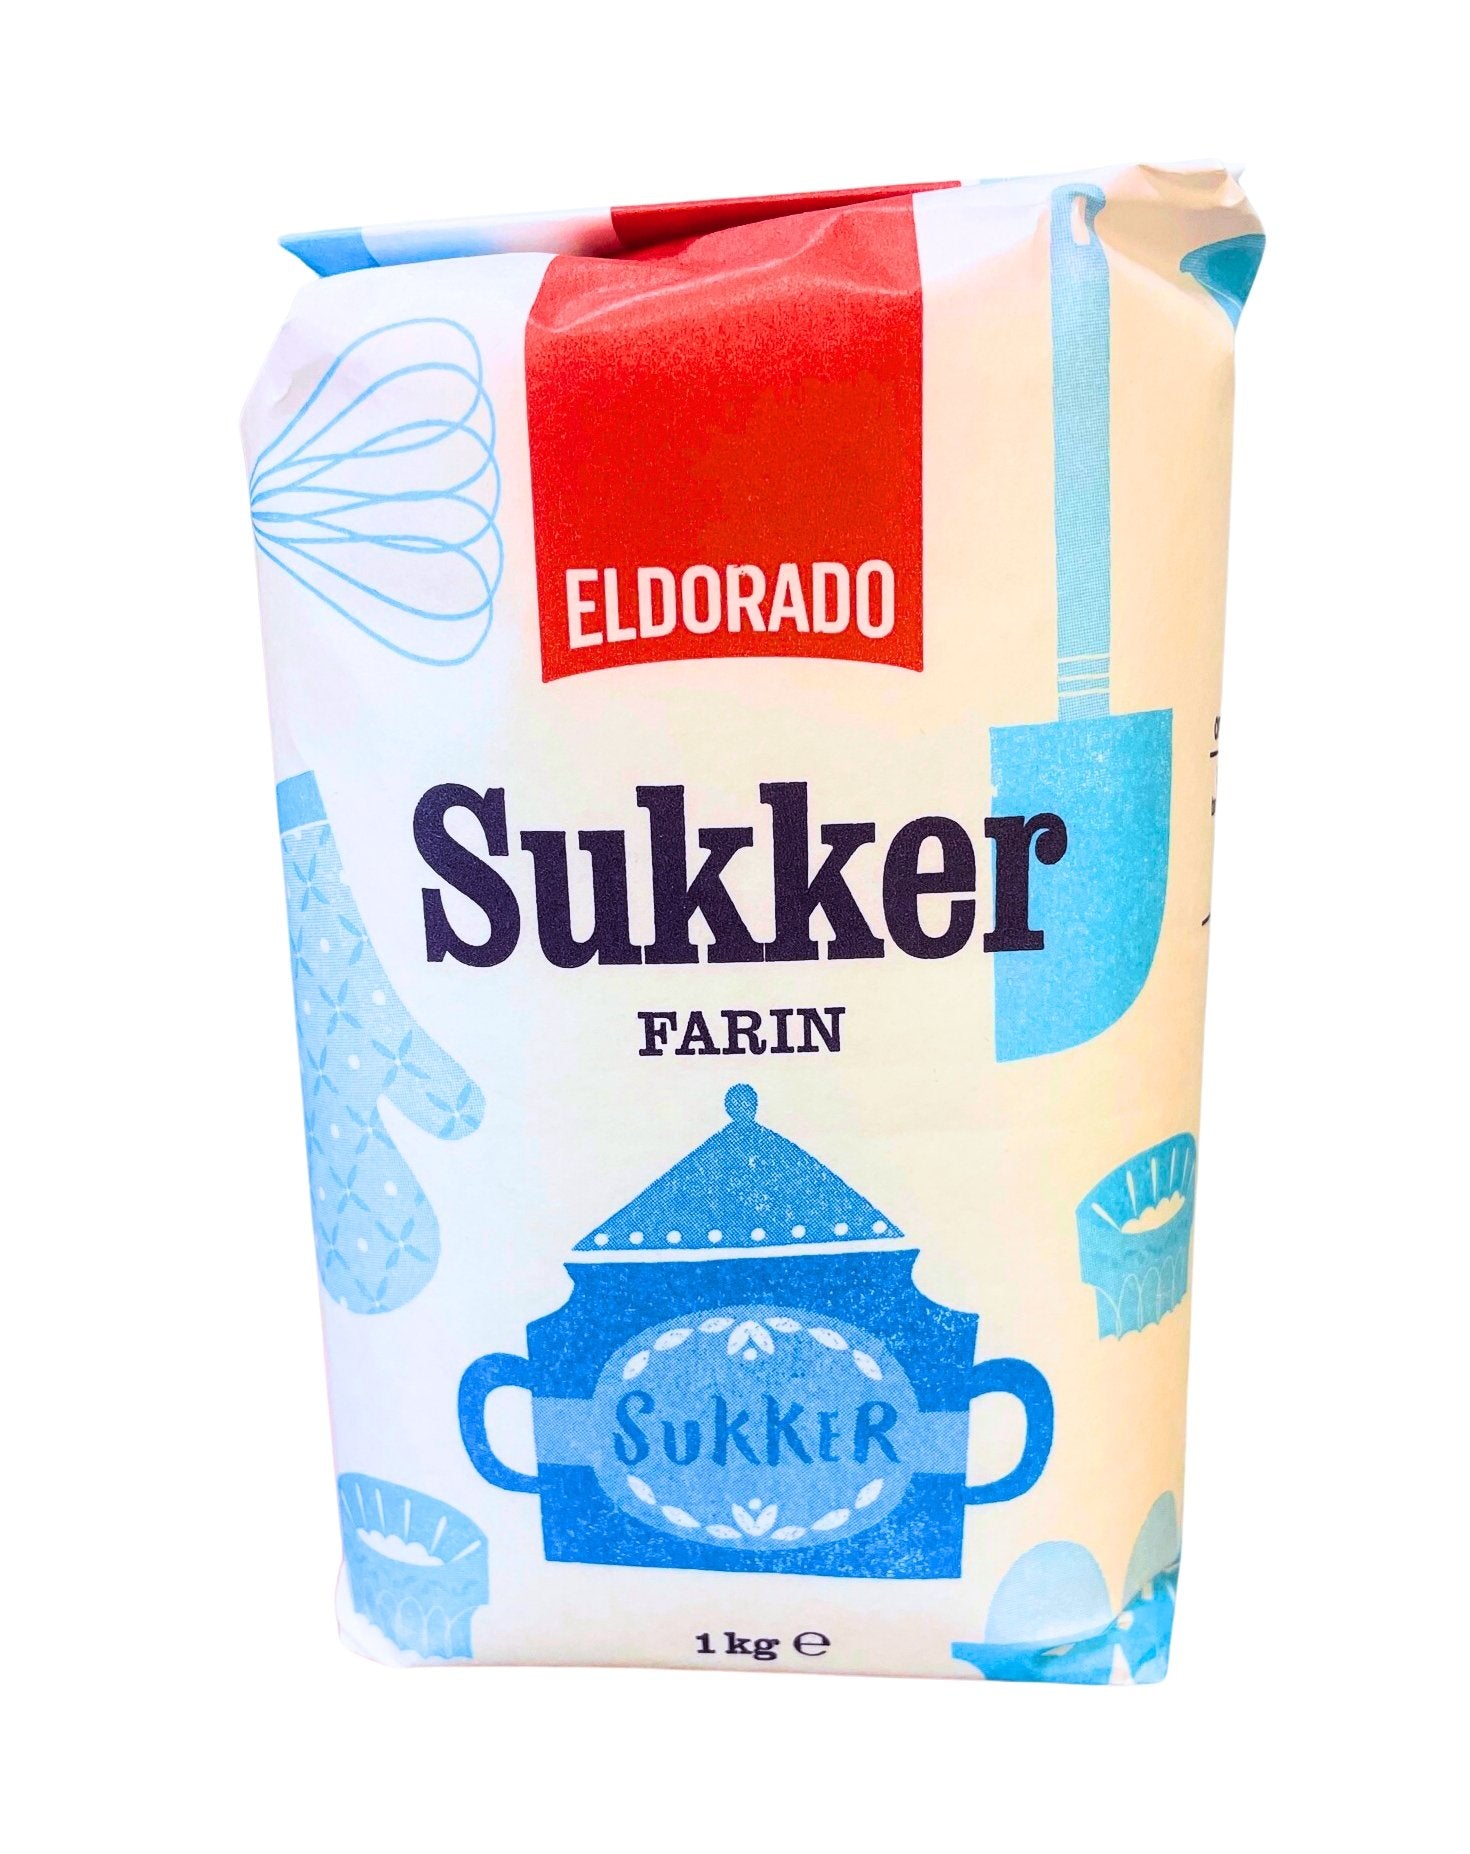 Eldorado Sukker Farin 1 Kgx 10 pakker - Pakmat